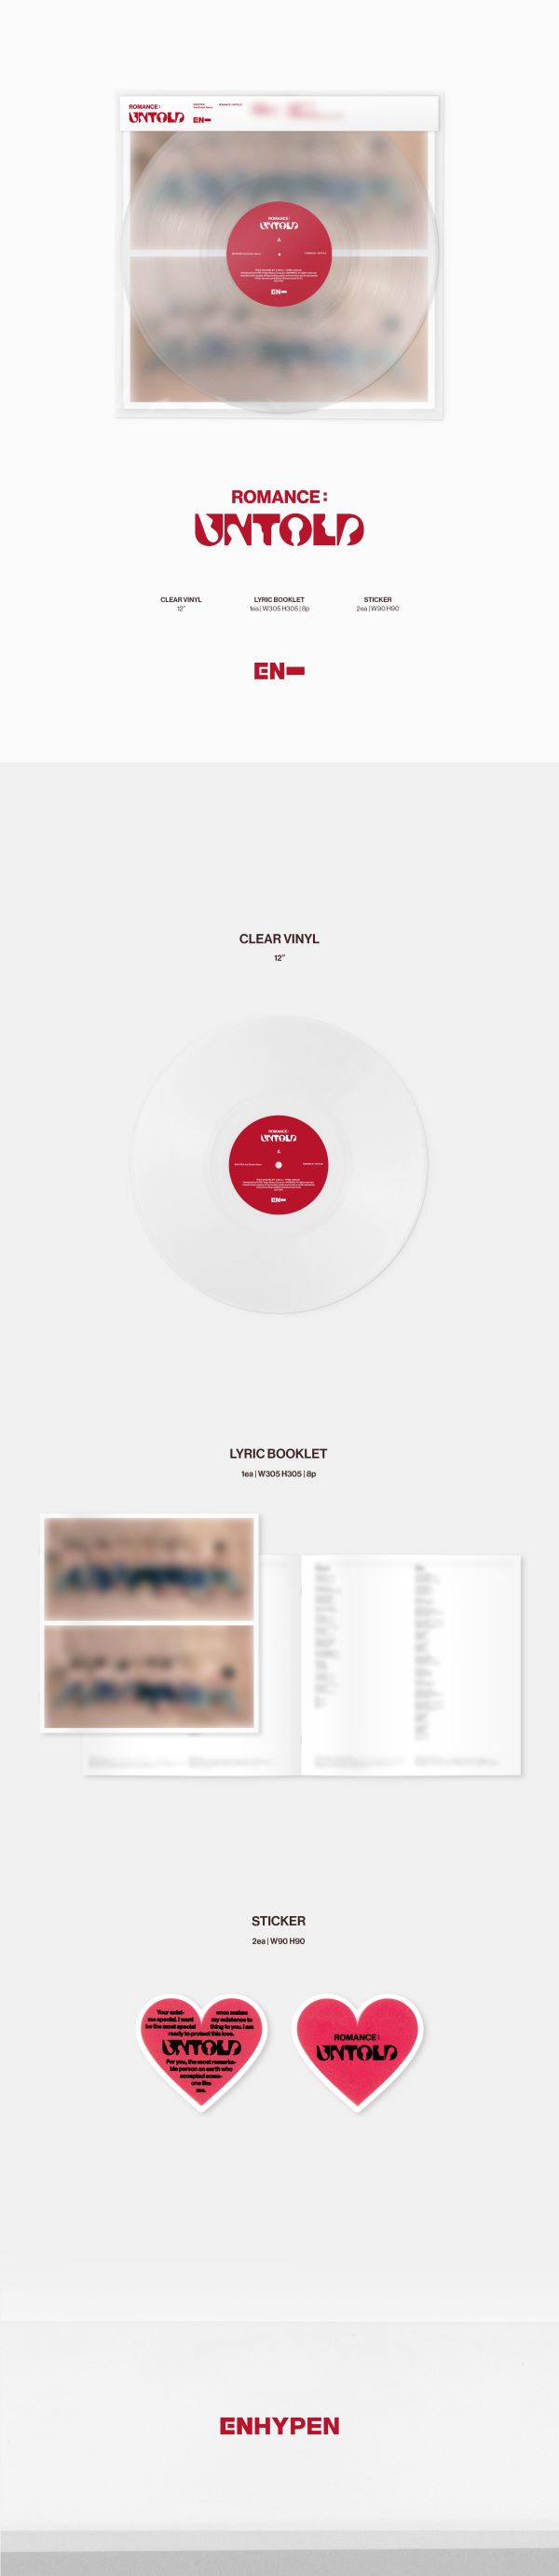 ENHYPEN 2nd Album ROMANCE : UNTOLD (Vinyl Version)